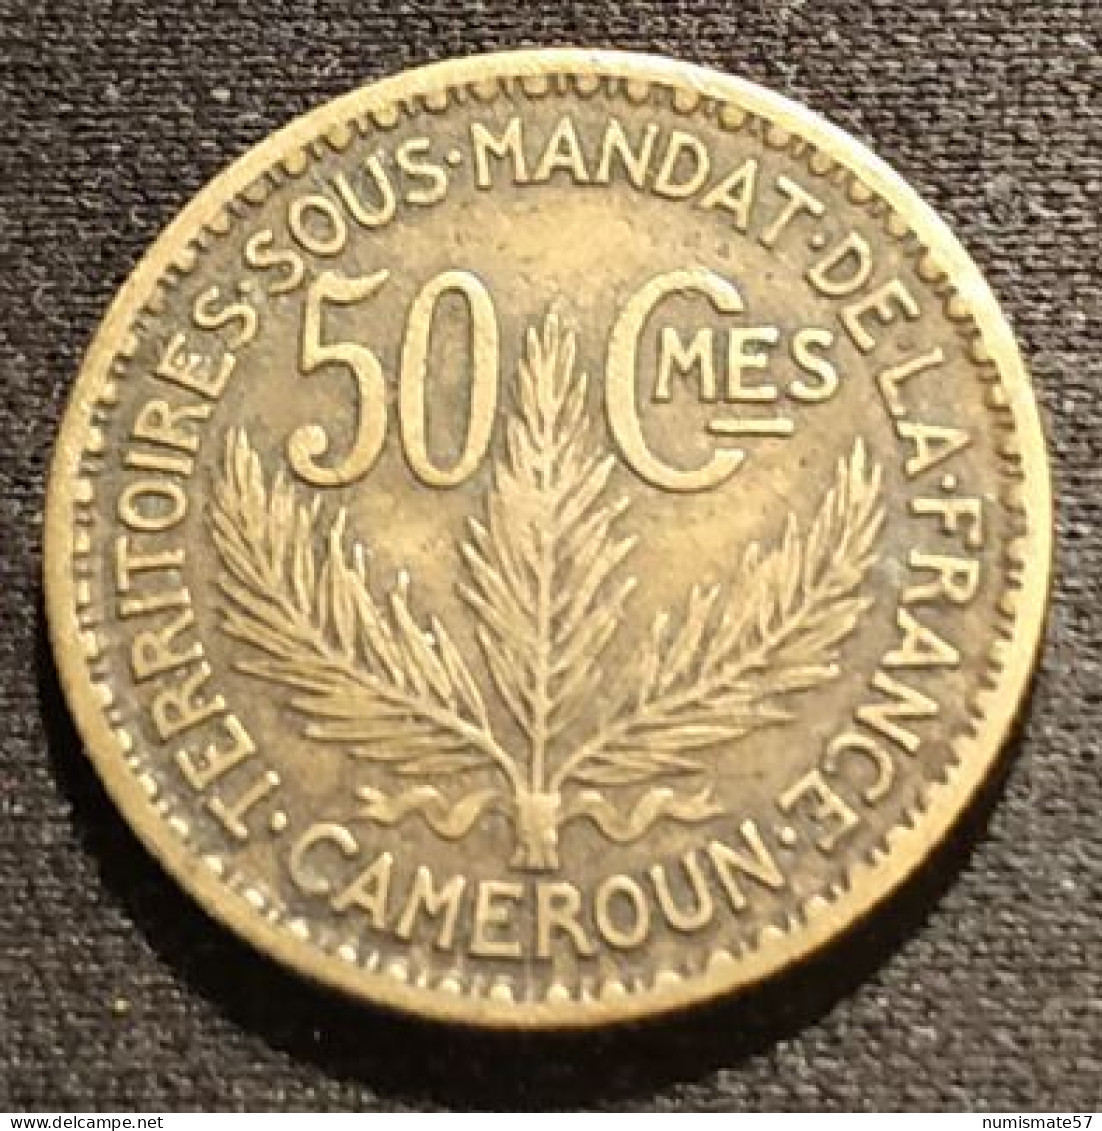 RARE - CAMEROUN - 50 CENTIMES 1925 - KM 1 - TERRITOIRES SOUS MANDAT DE LA FRANCE - Cameroon